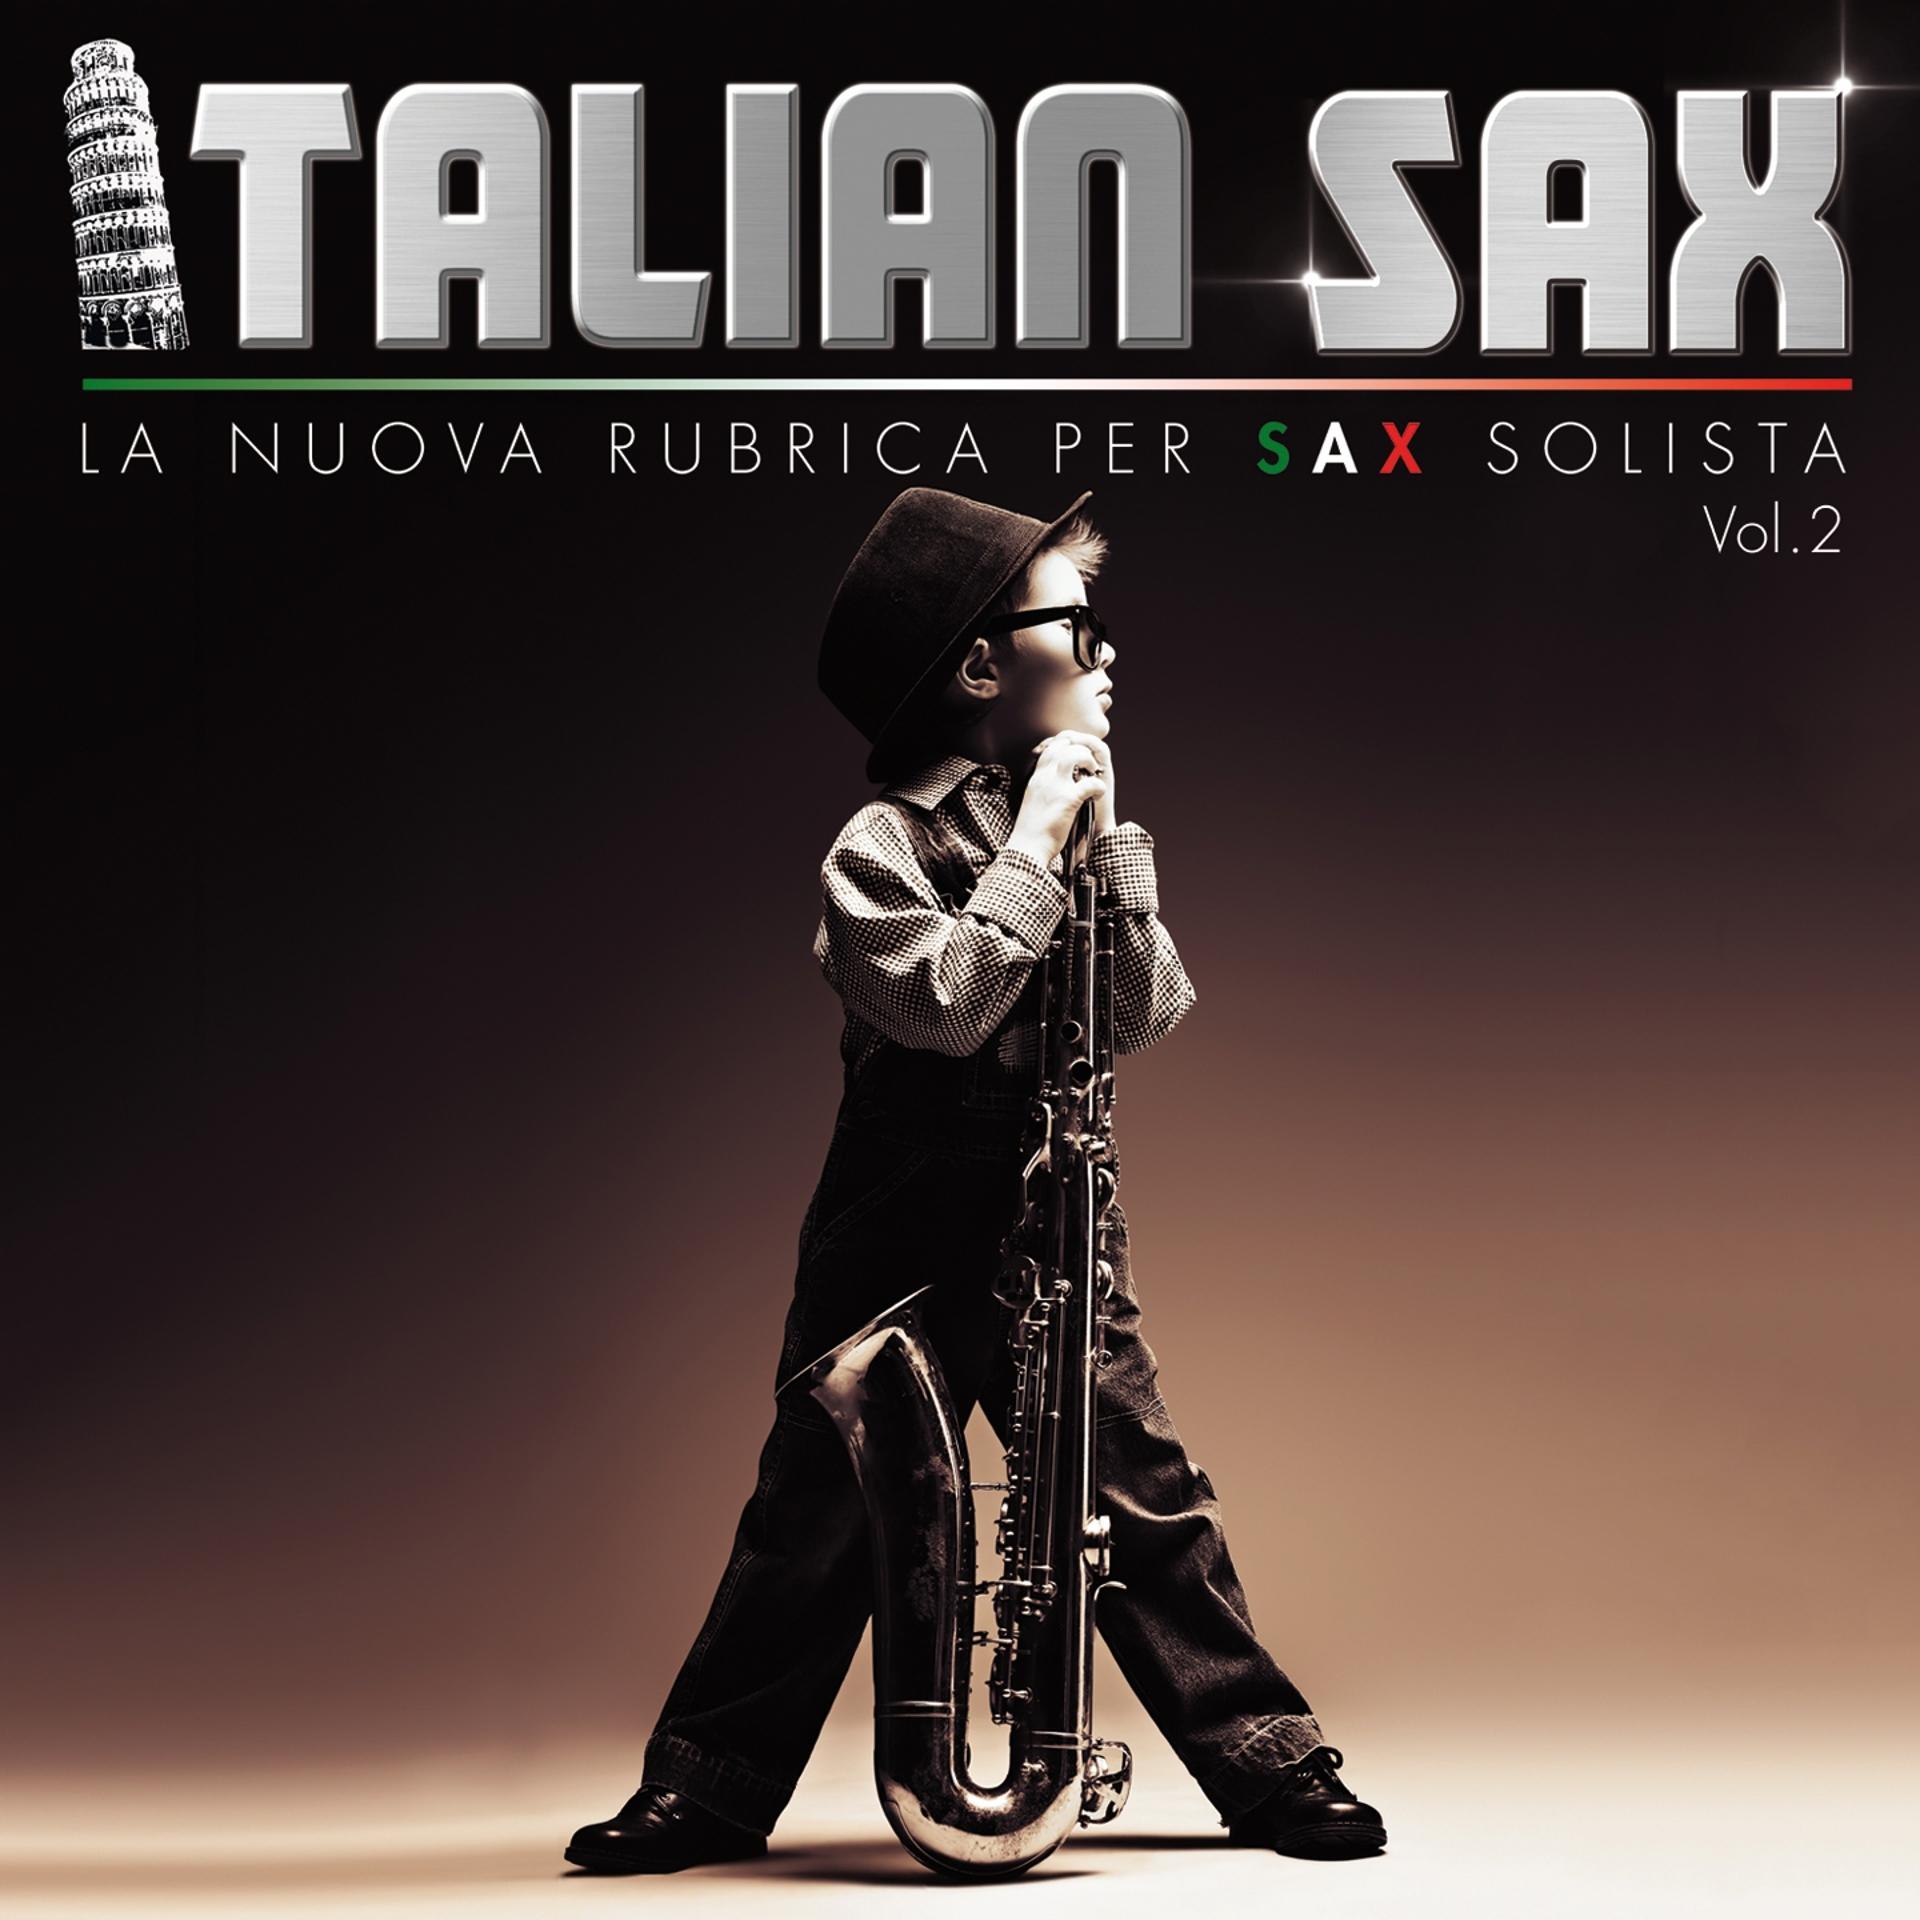 Постер альбома Italian Sax, Vol. 2 (La nuova rubrica per sax solista)